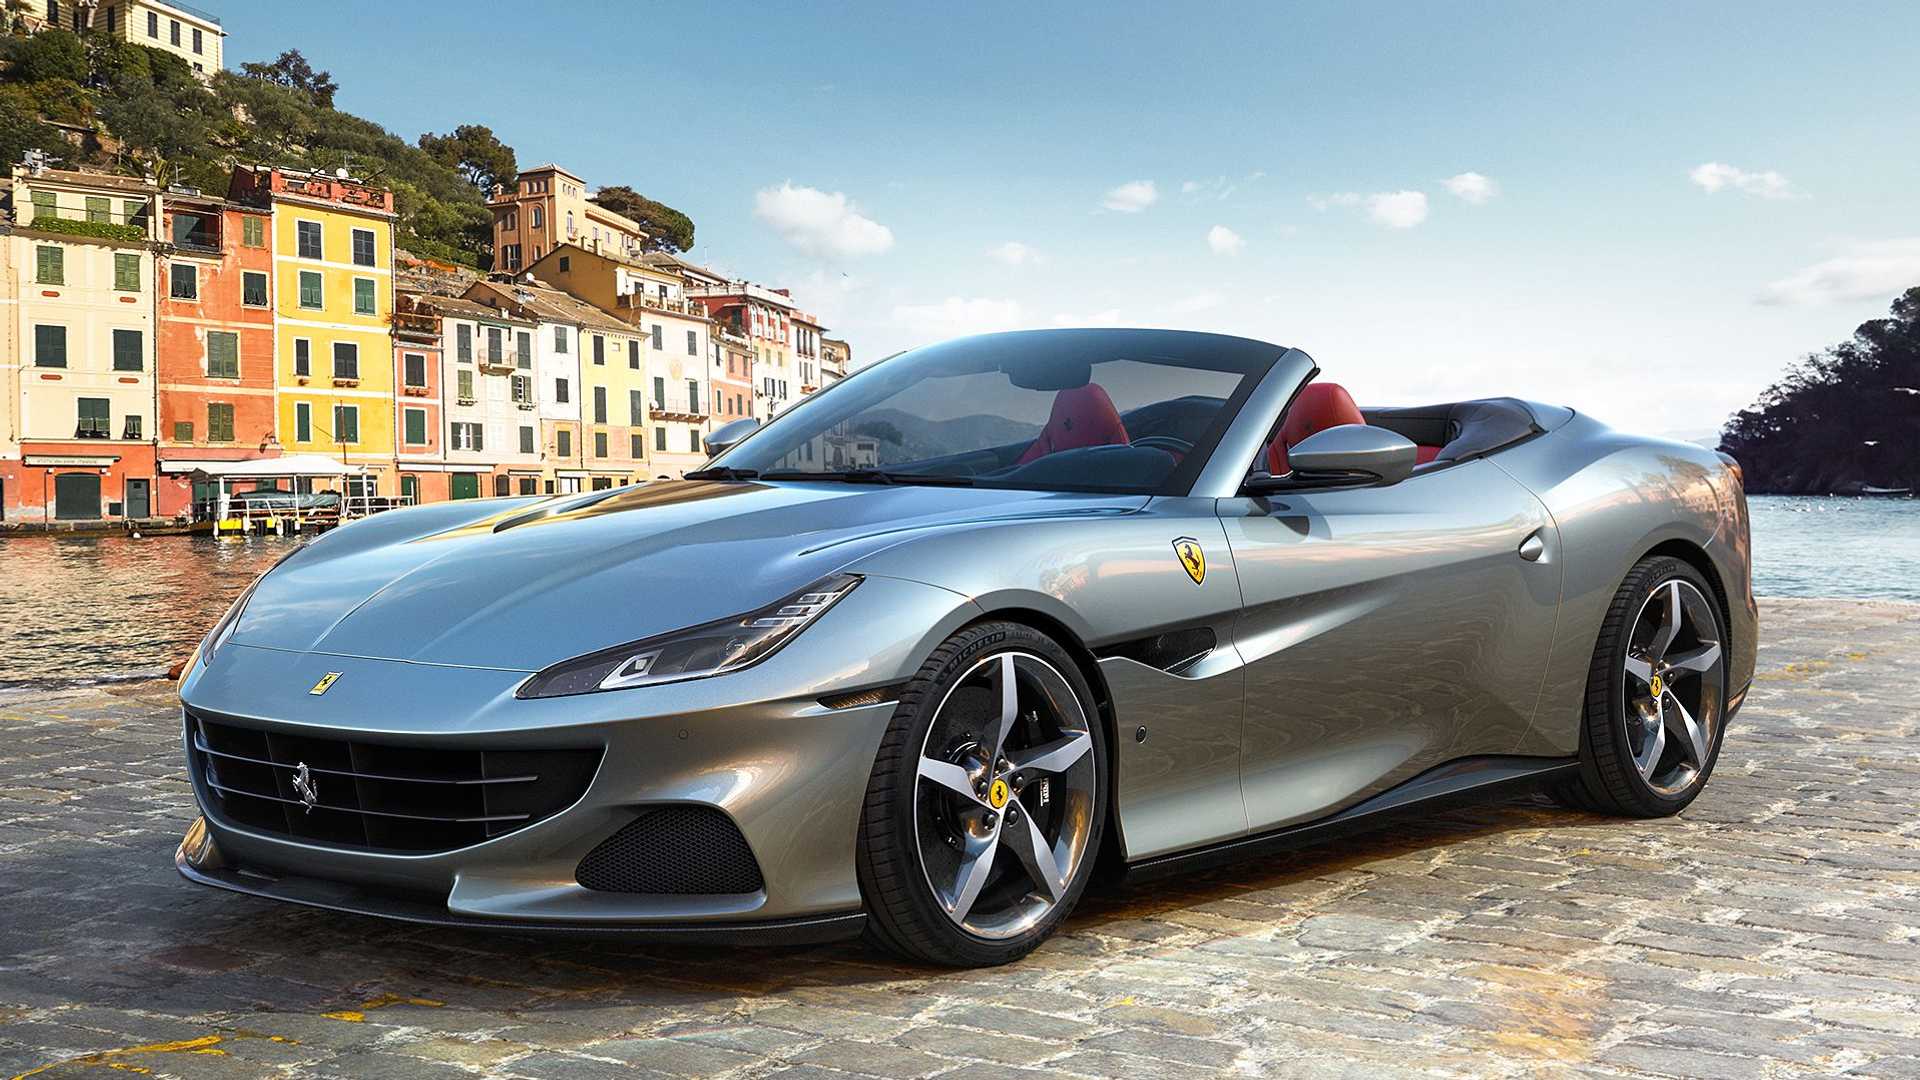 Mẫu xe Ferrari Portofino thời thượng được nhiều quý cô sành điệu săn đón